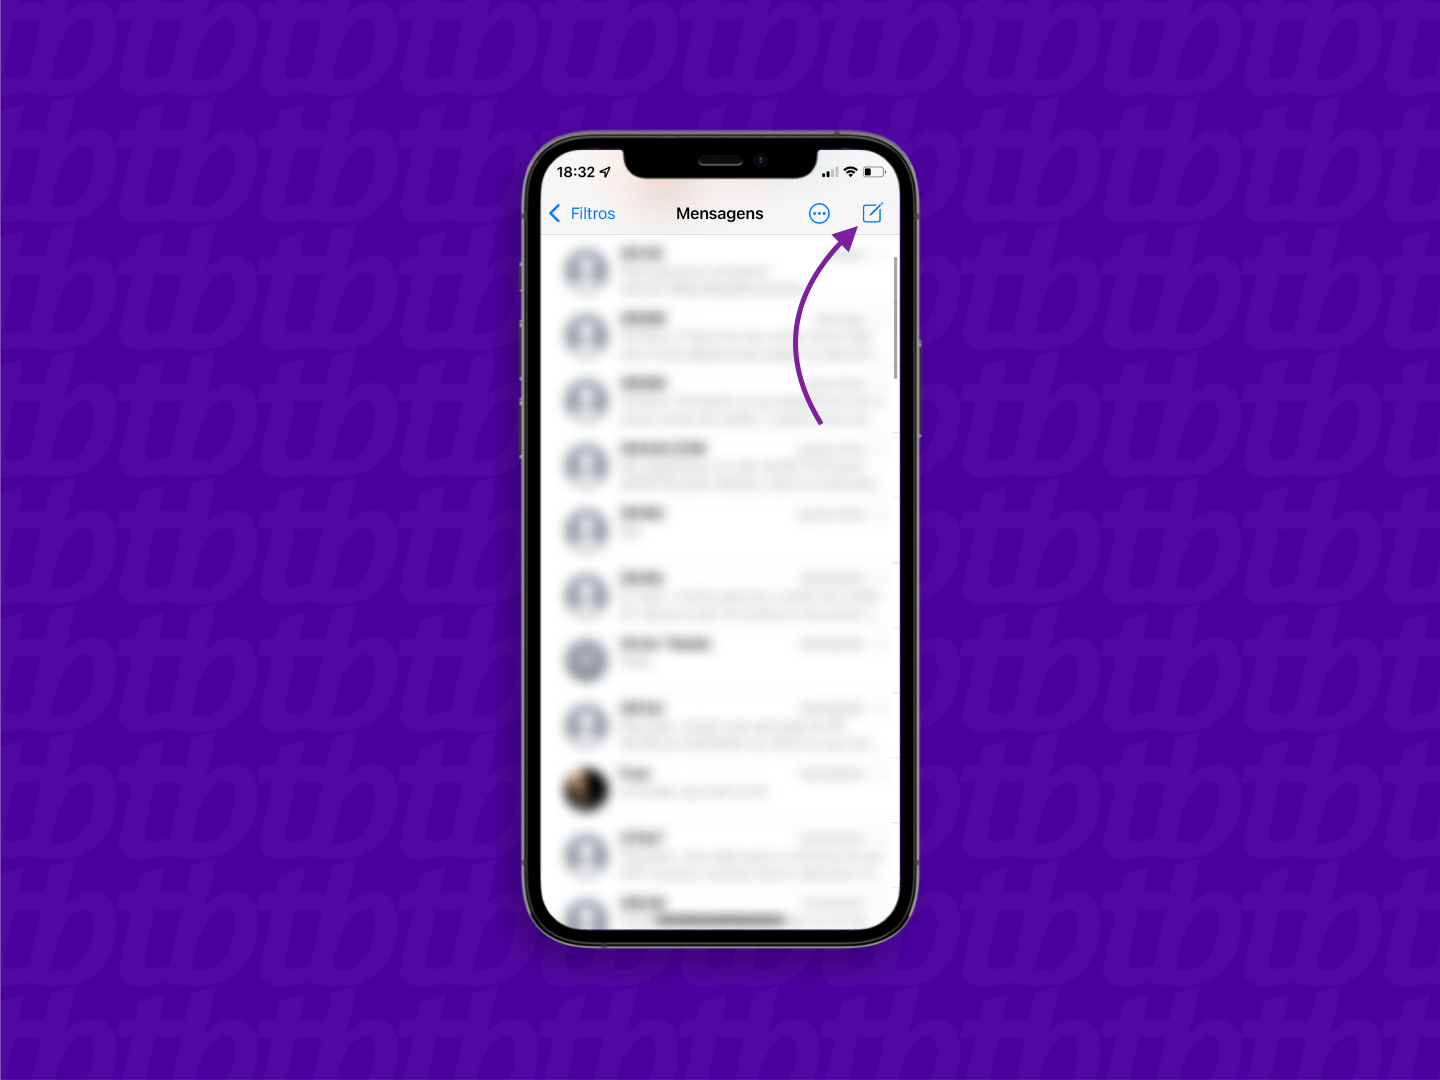 Tela do aplicativo de mensagens do iPhone com seta indicando o botão para iniciar uma nova conversa